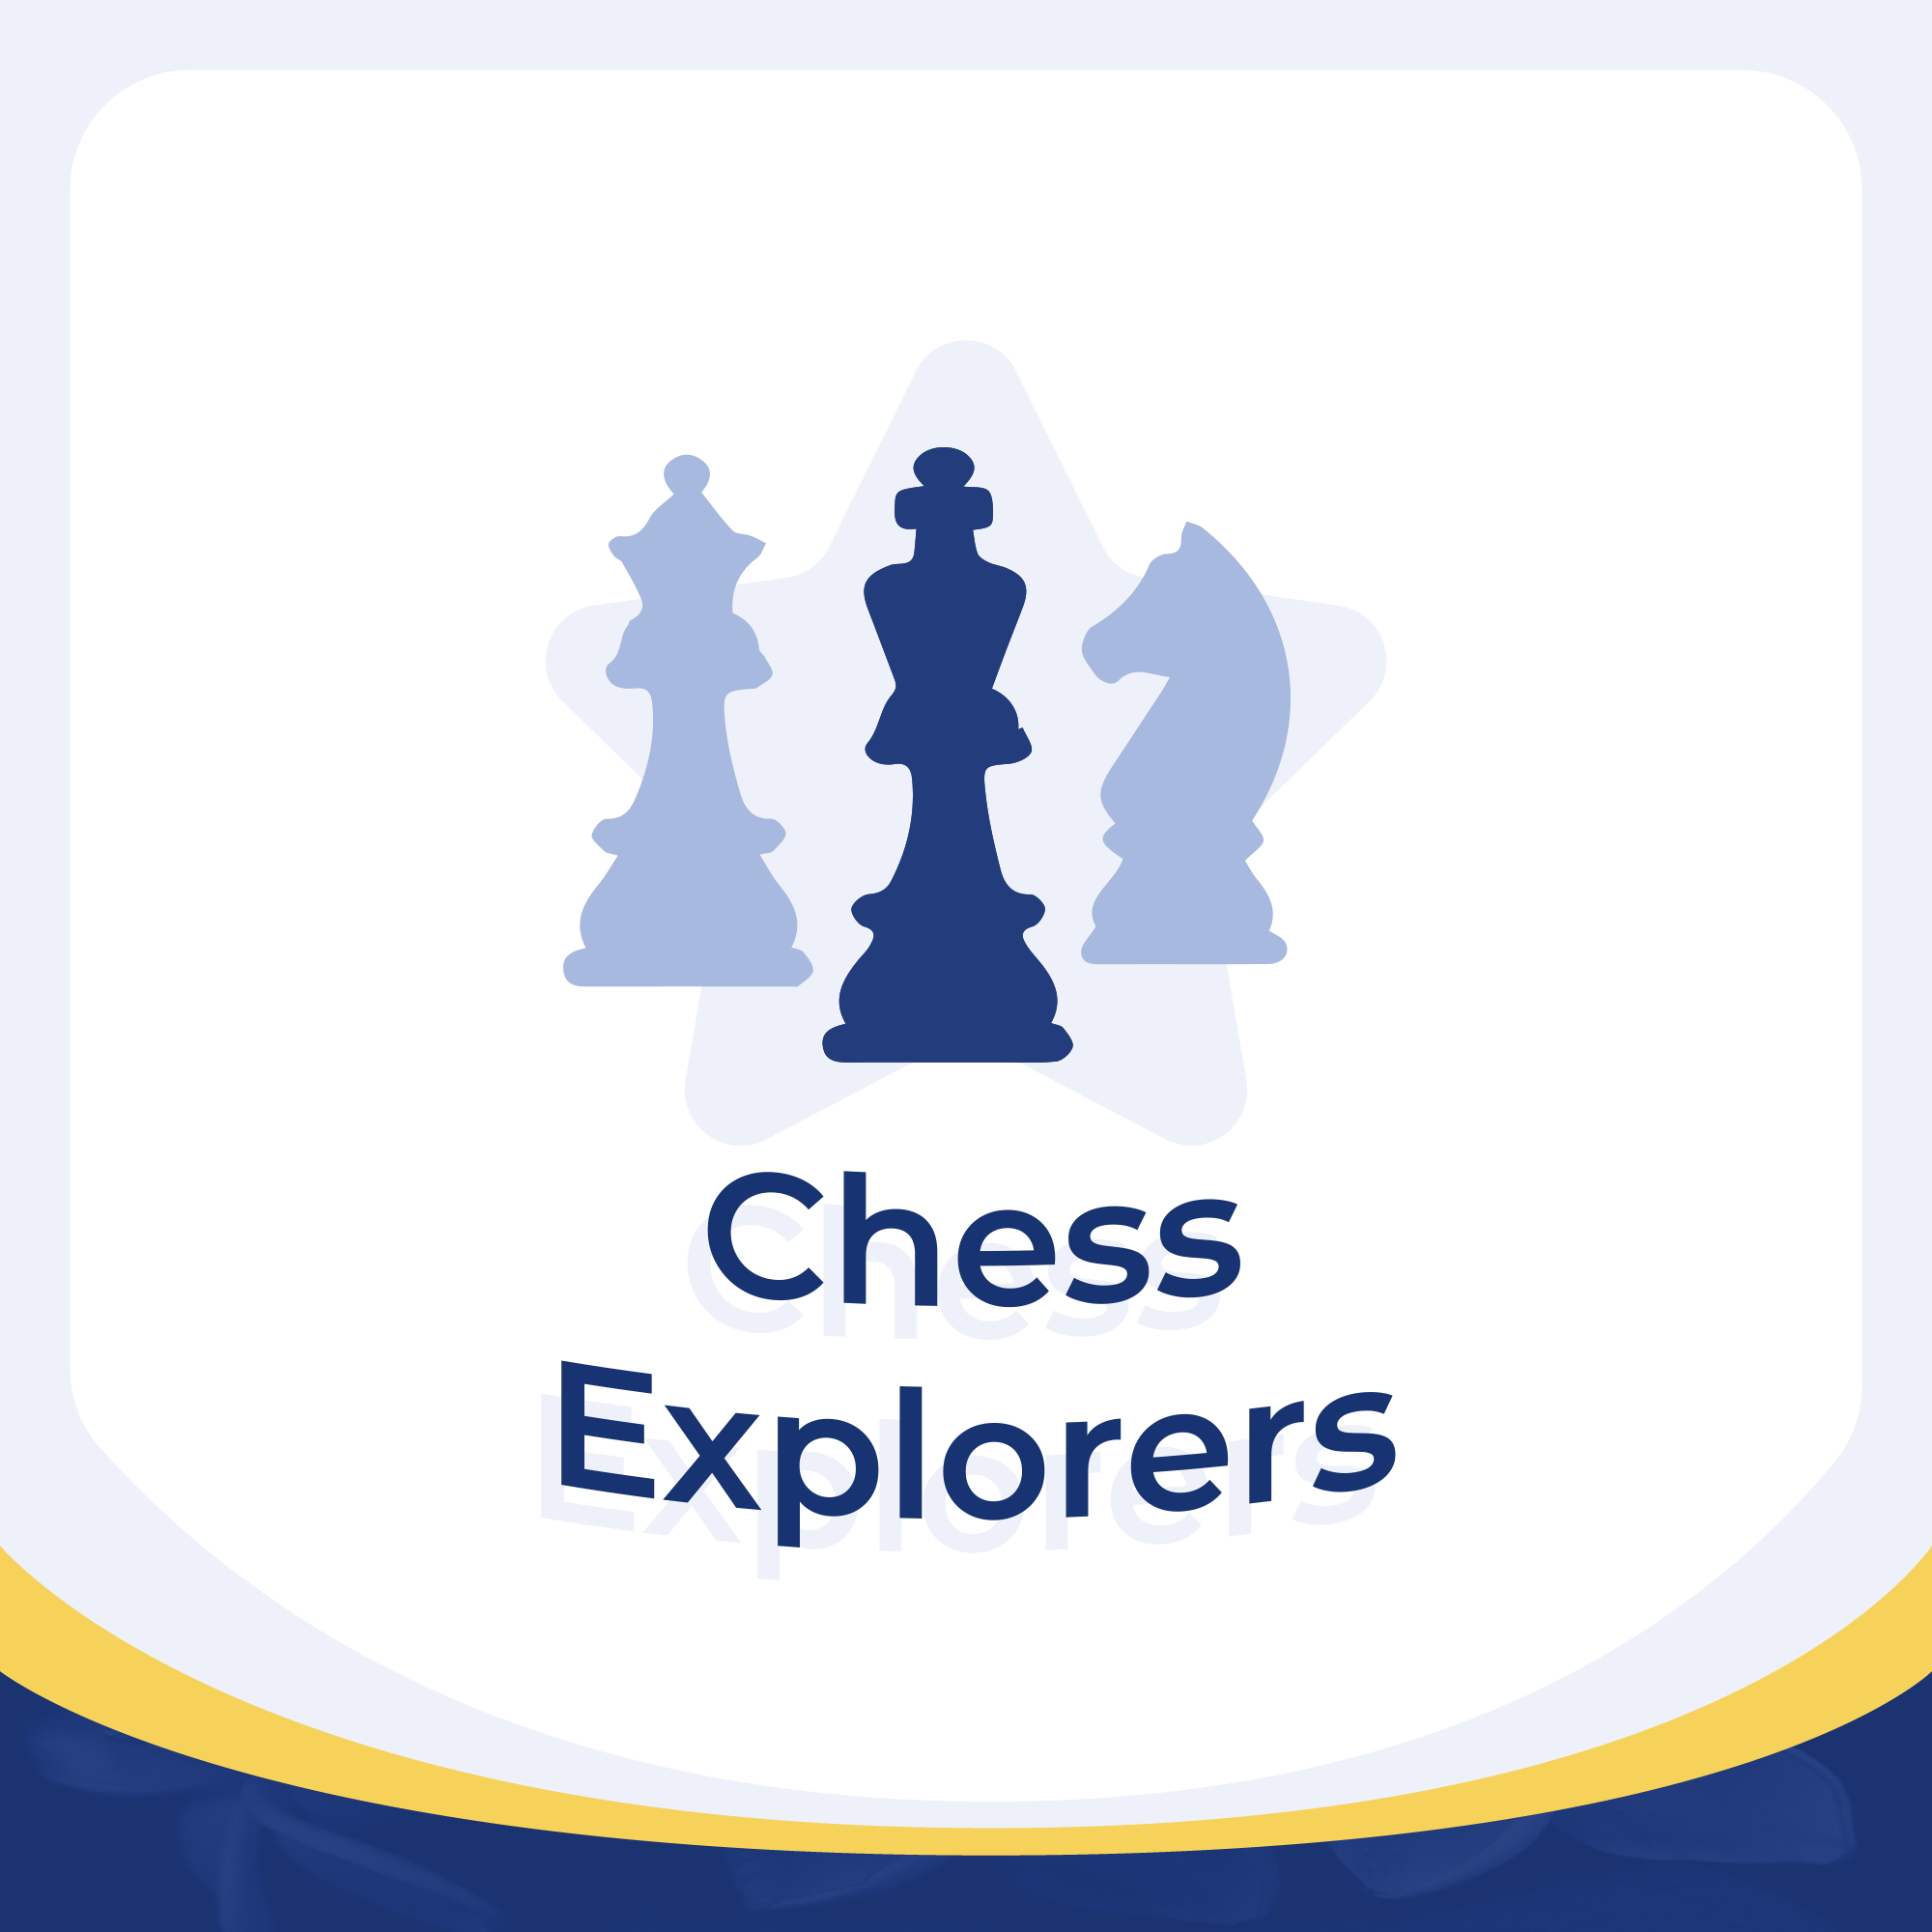 Chess Explorers